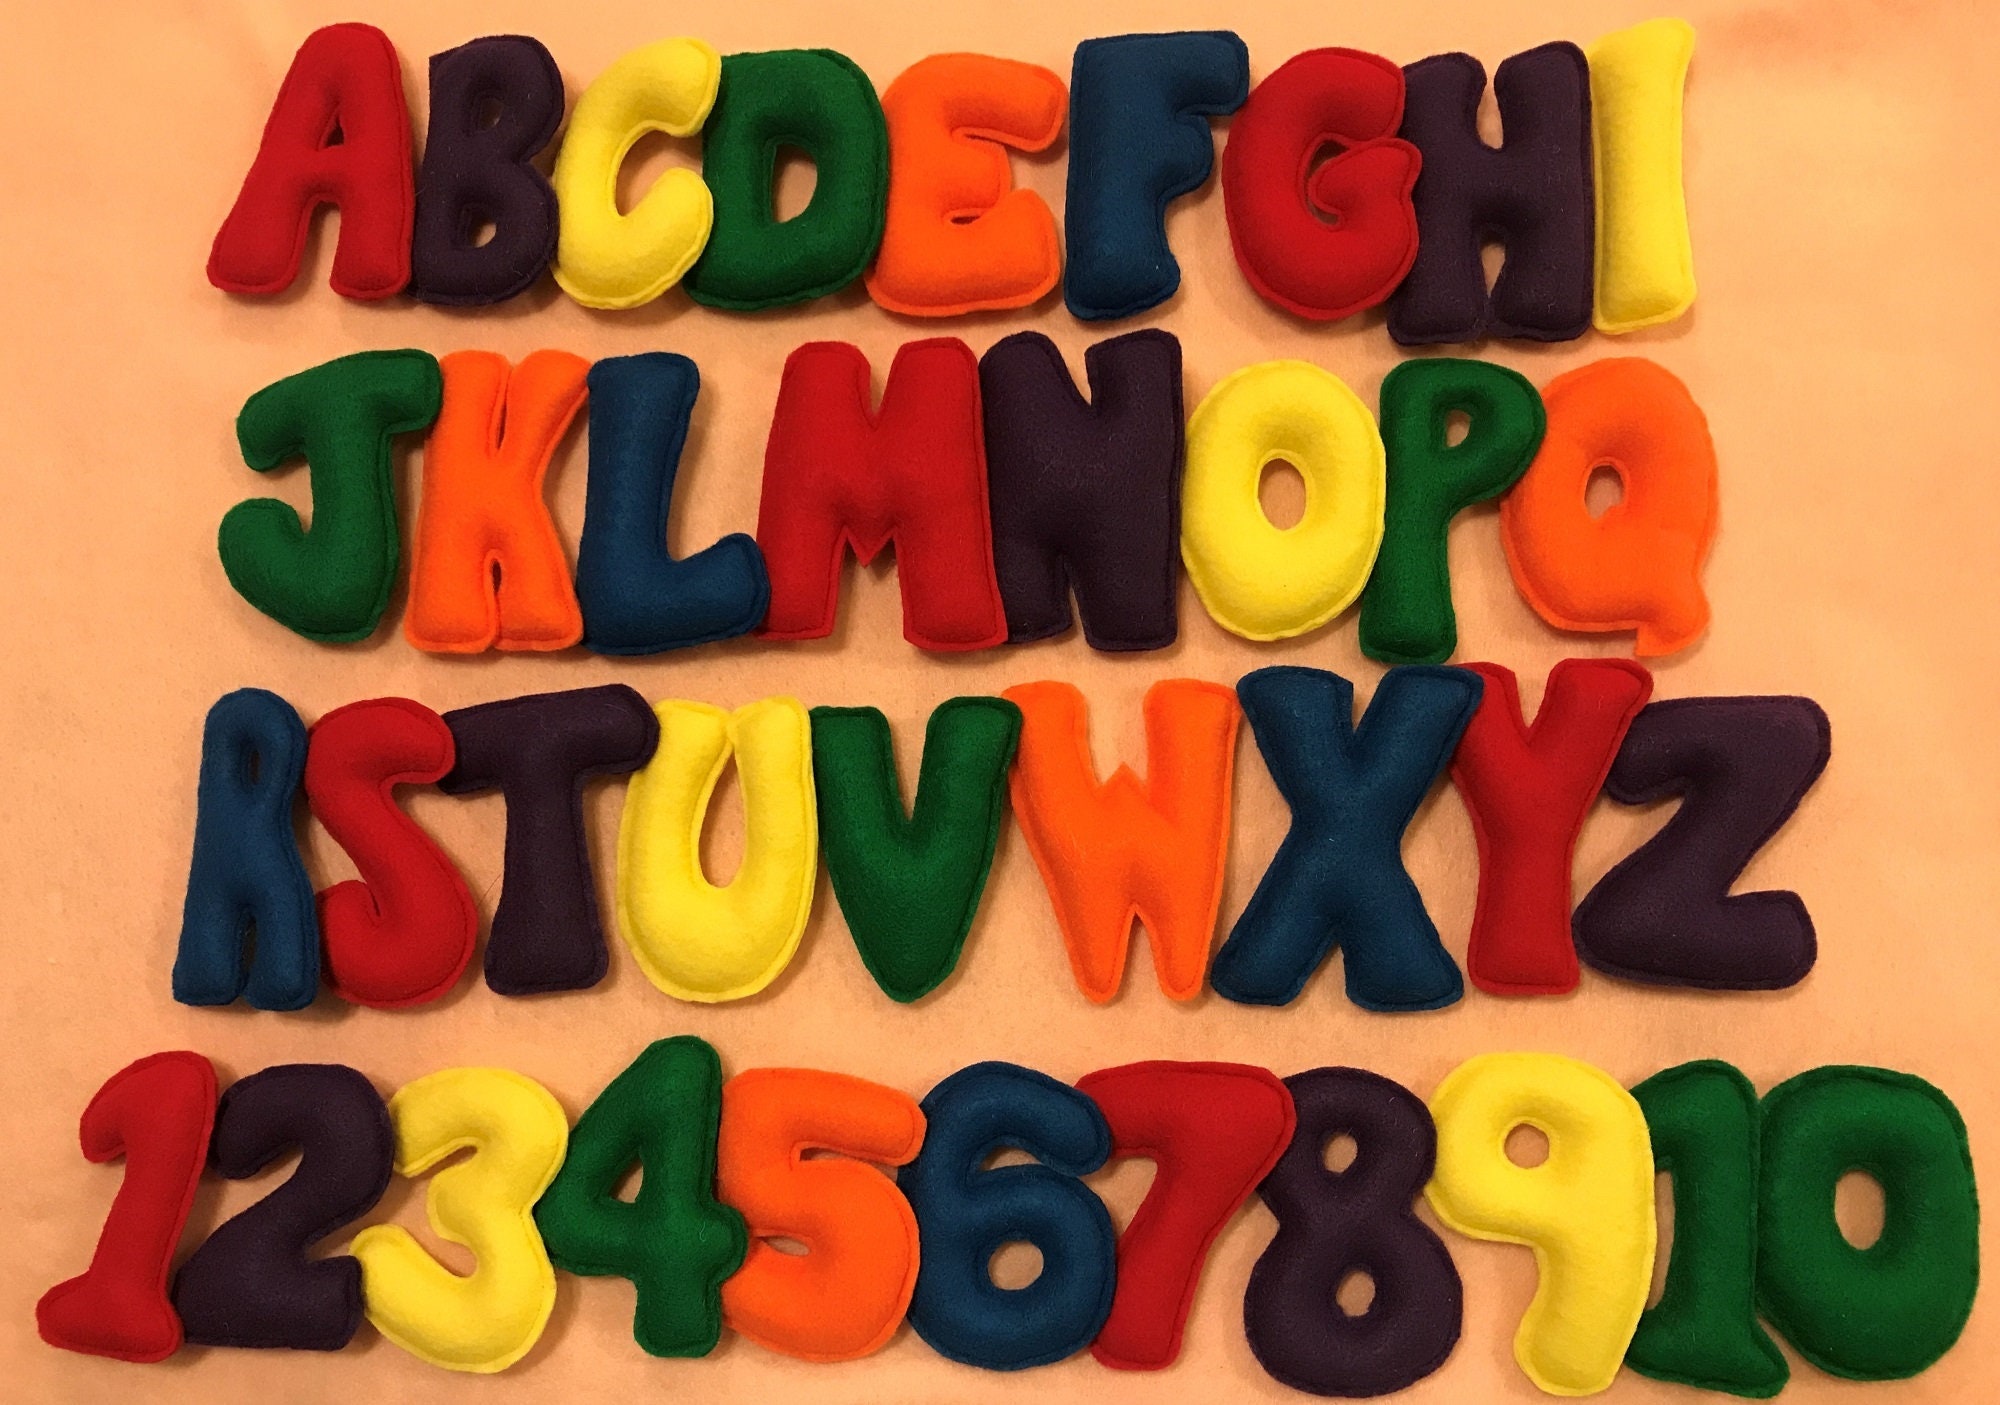 Felt Letters, Felt Alphabet, Preschool Alphabet, Learning Alphabet, Stuffed  Letters, Felt English Alphabet, Educational Toy, Montessori Toys 